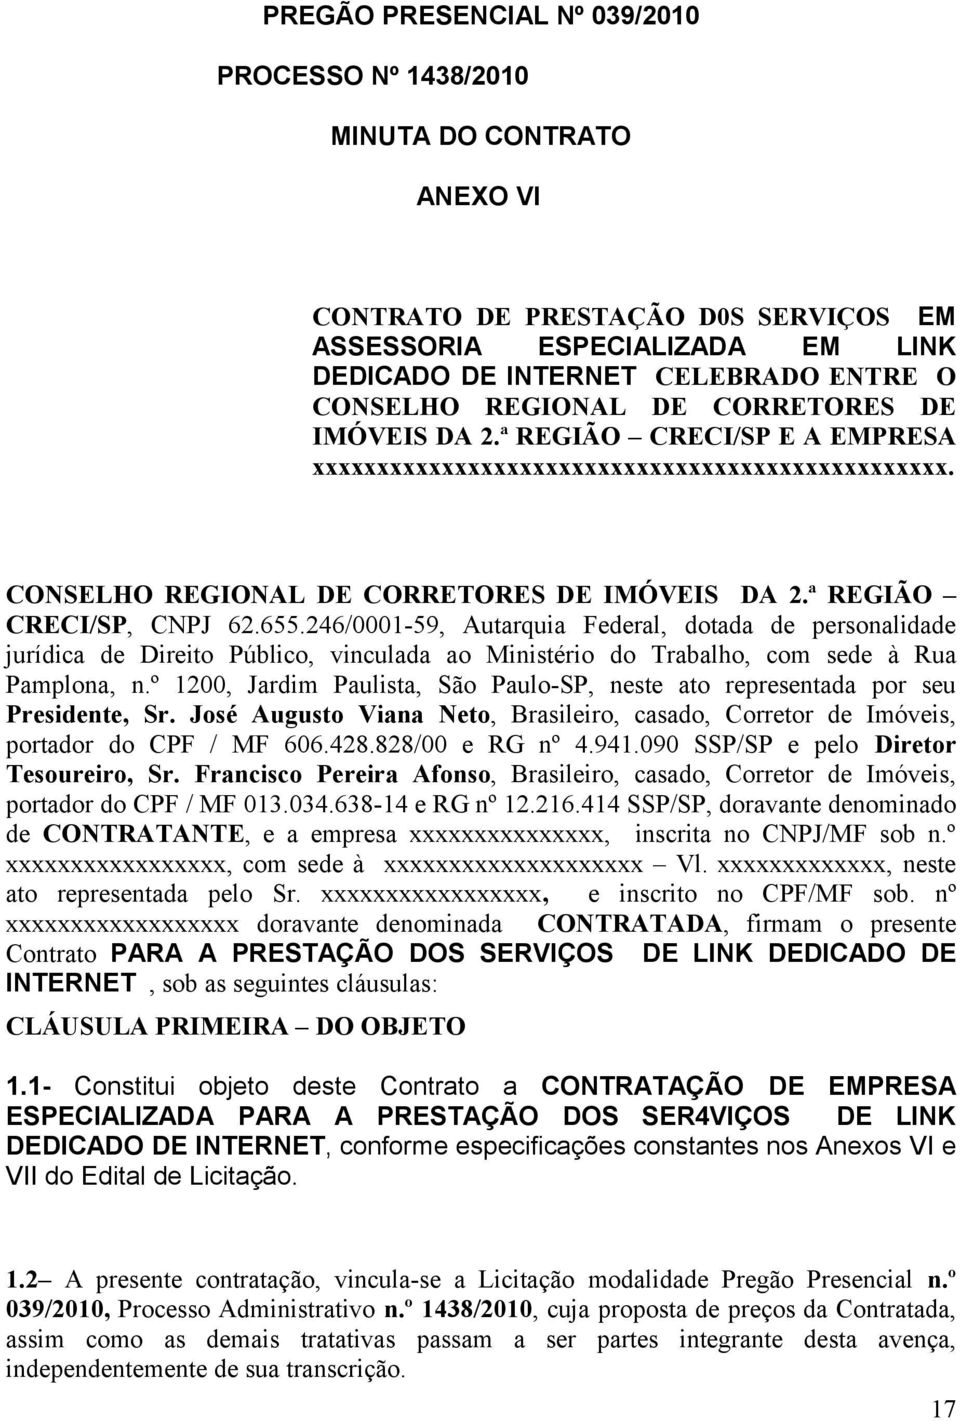 246/0001-59, Autarquia Federal, dotada de personalidade jurídica de Direito Público, vinculada ao Ministério do Trabalho, com sede à Rua Pamplona, n.